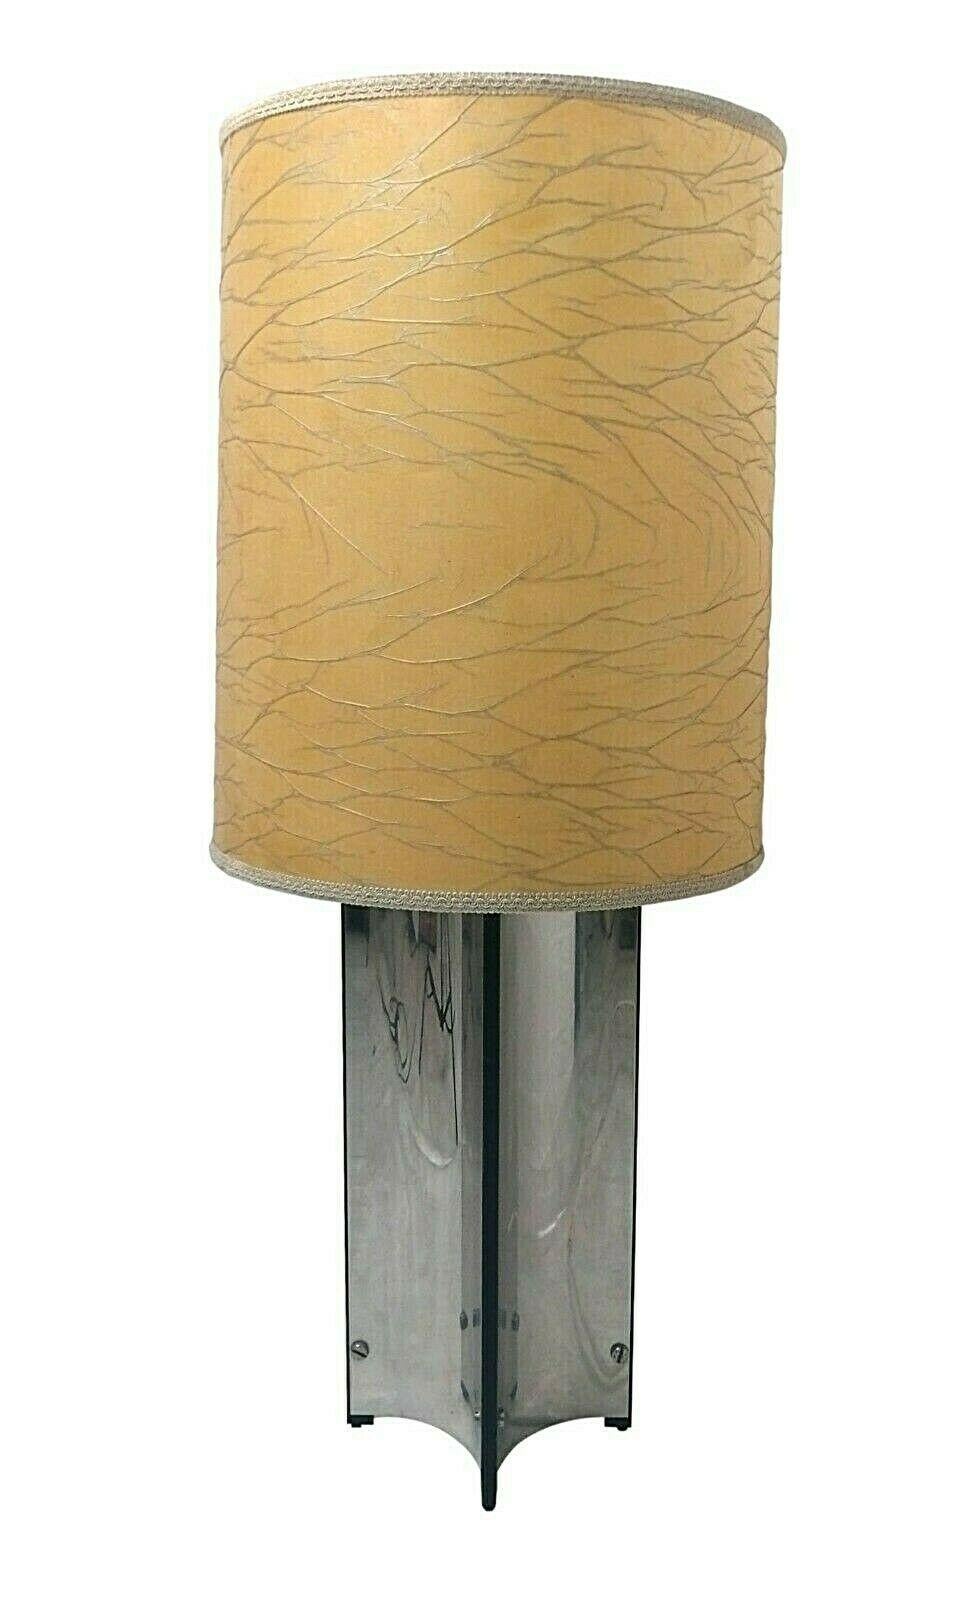 Un lampadaire, années 1970, production originale Sciolari, fait de feuilles d'acier courbées sur quatre côtés

la lampe a été trouvée dans un magasin fermé, est toujours munie de son étiquette d'origine, ne conserve que quelques signes évidents du